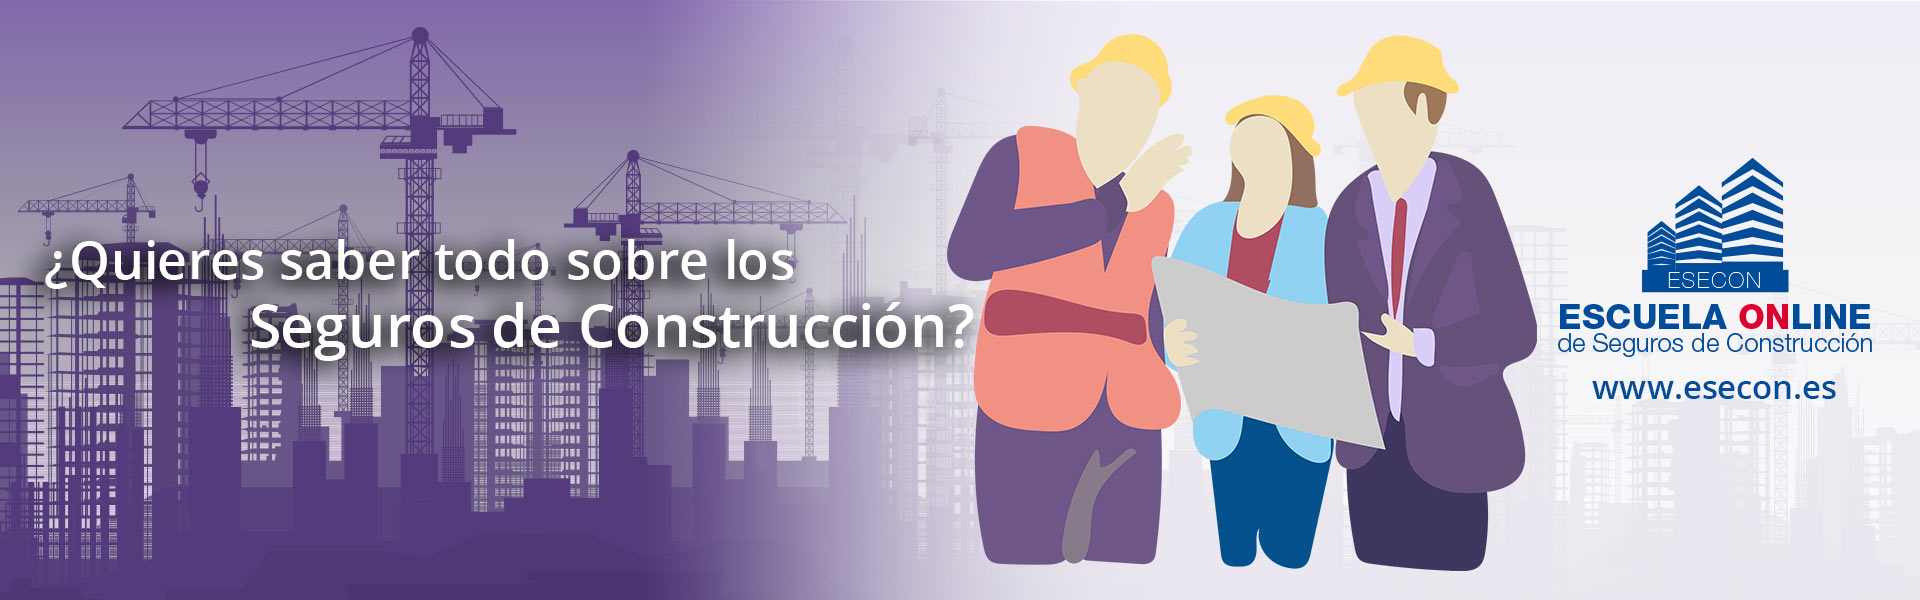 ¿Quieres saber todo sobre los seguros de construcción? 